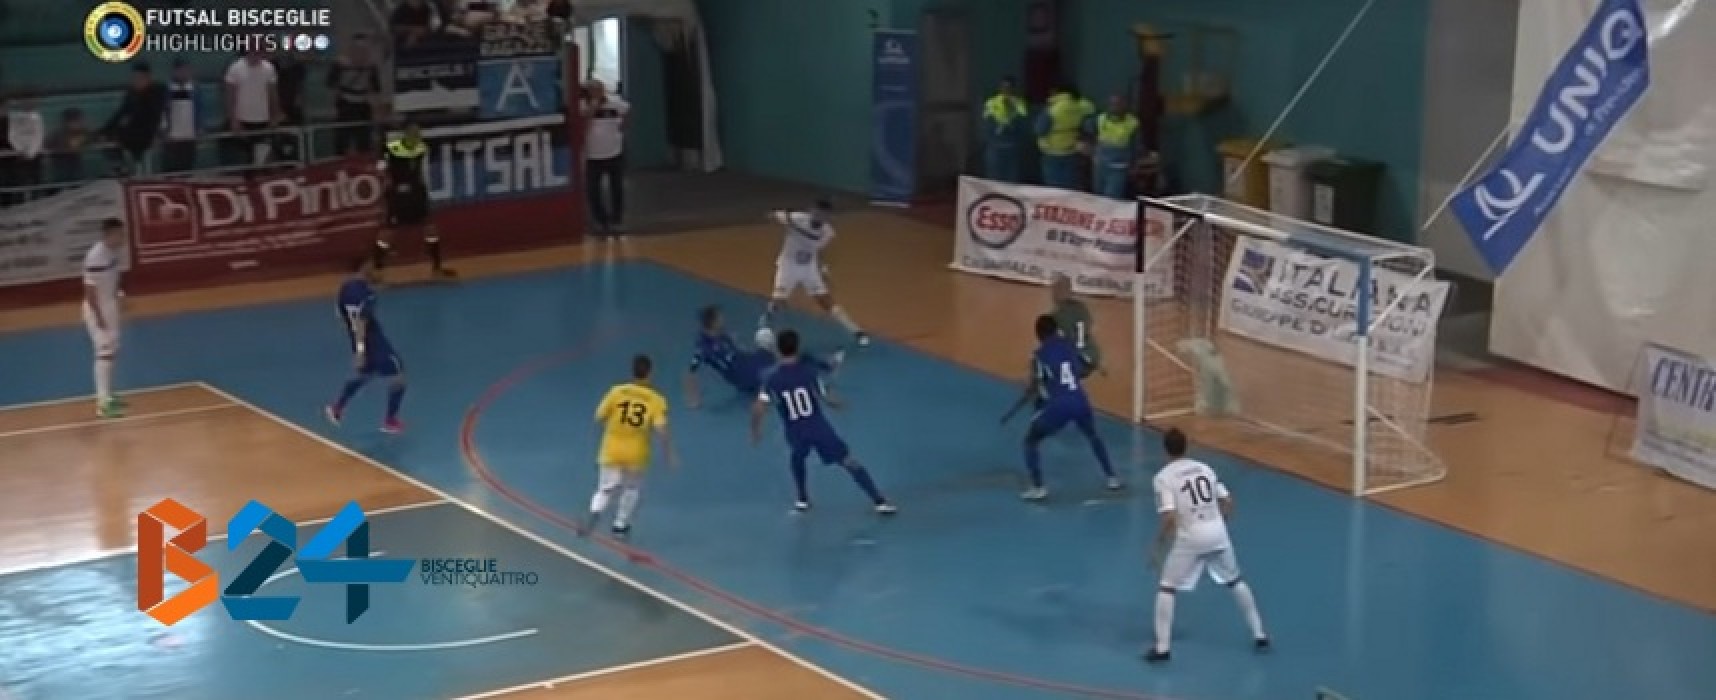 Futsal Bisceglie-Augusta 2-3 / VIDEO HIGHLIGHTS